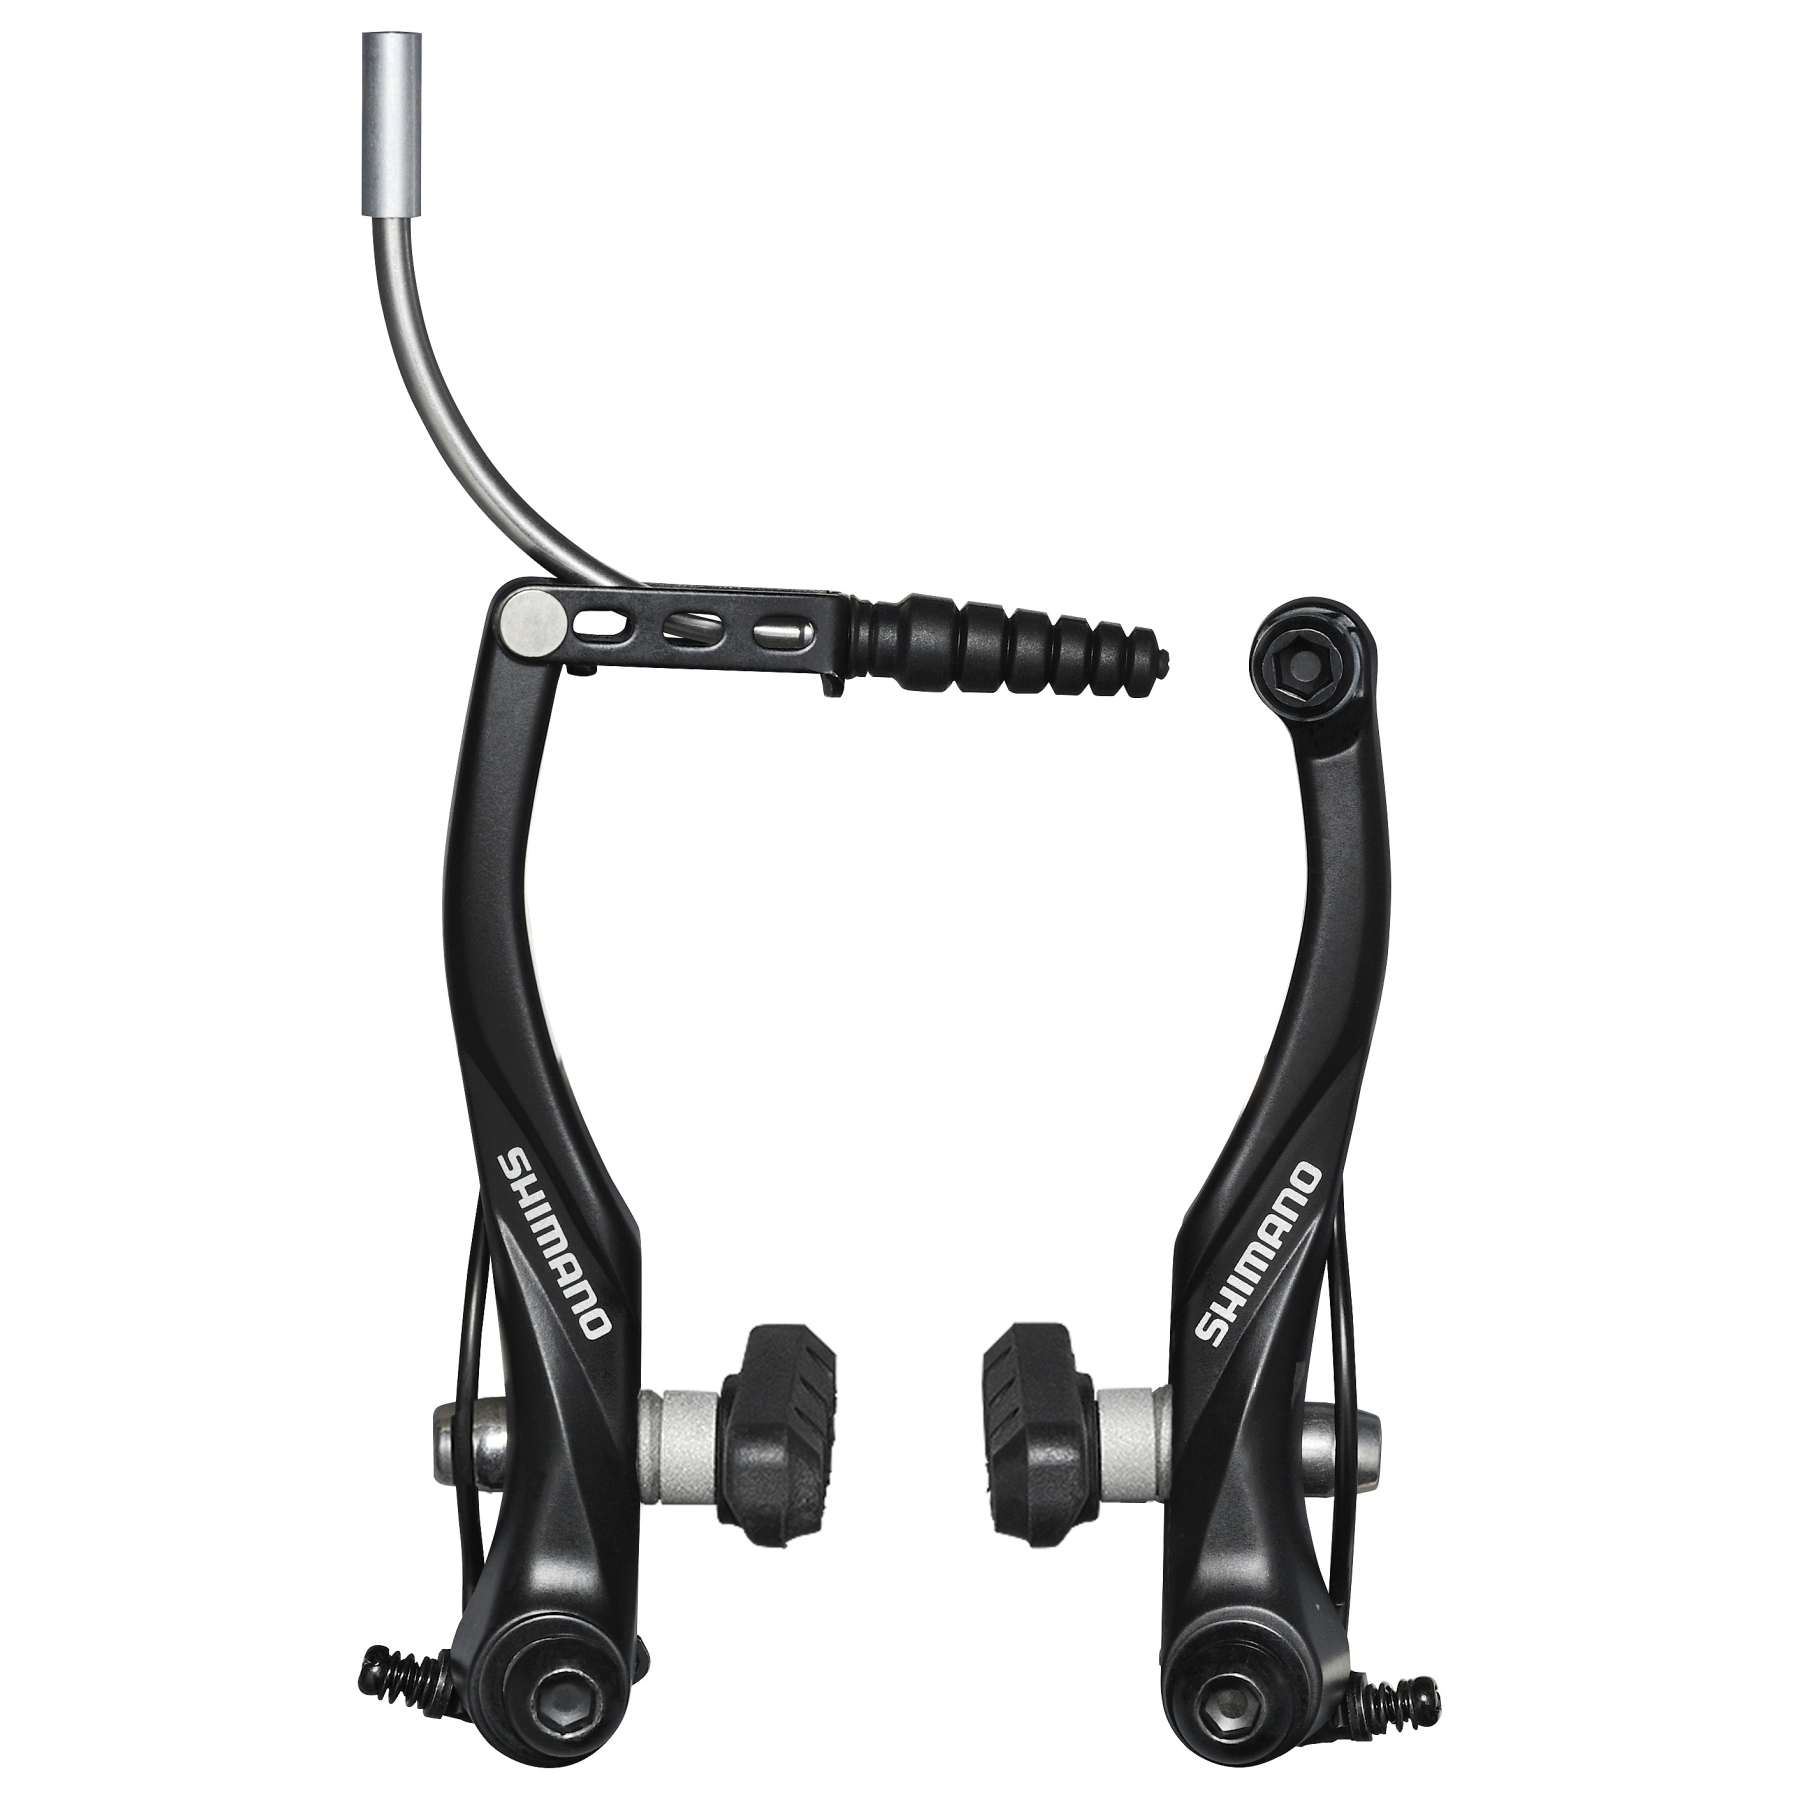 Produktbild von Shimano Alivio Trekking BR-T4000 V-Brake Felgenbremse - VR - schwarz